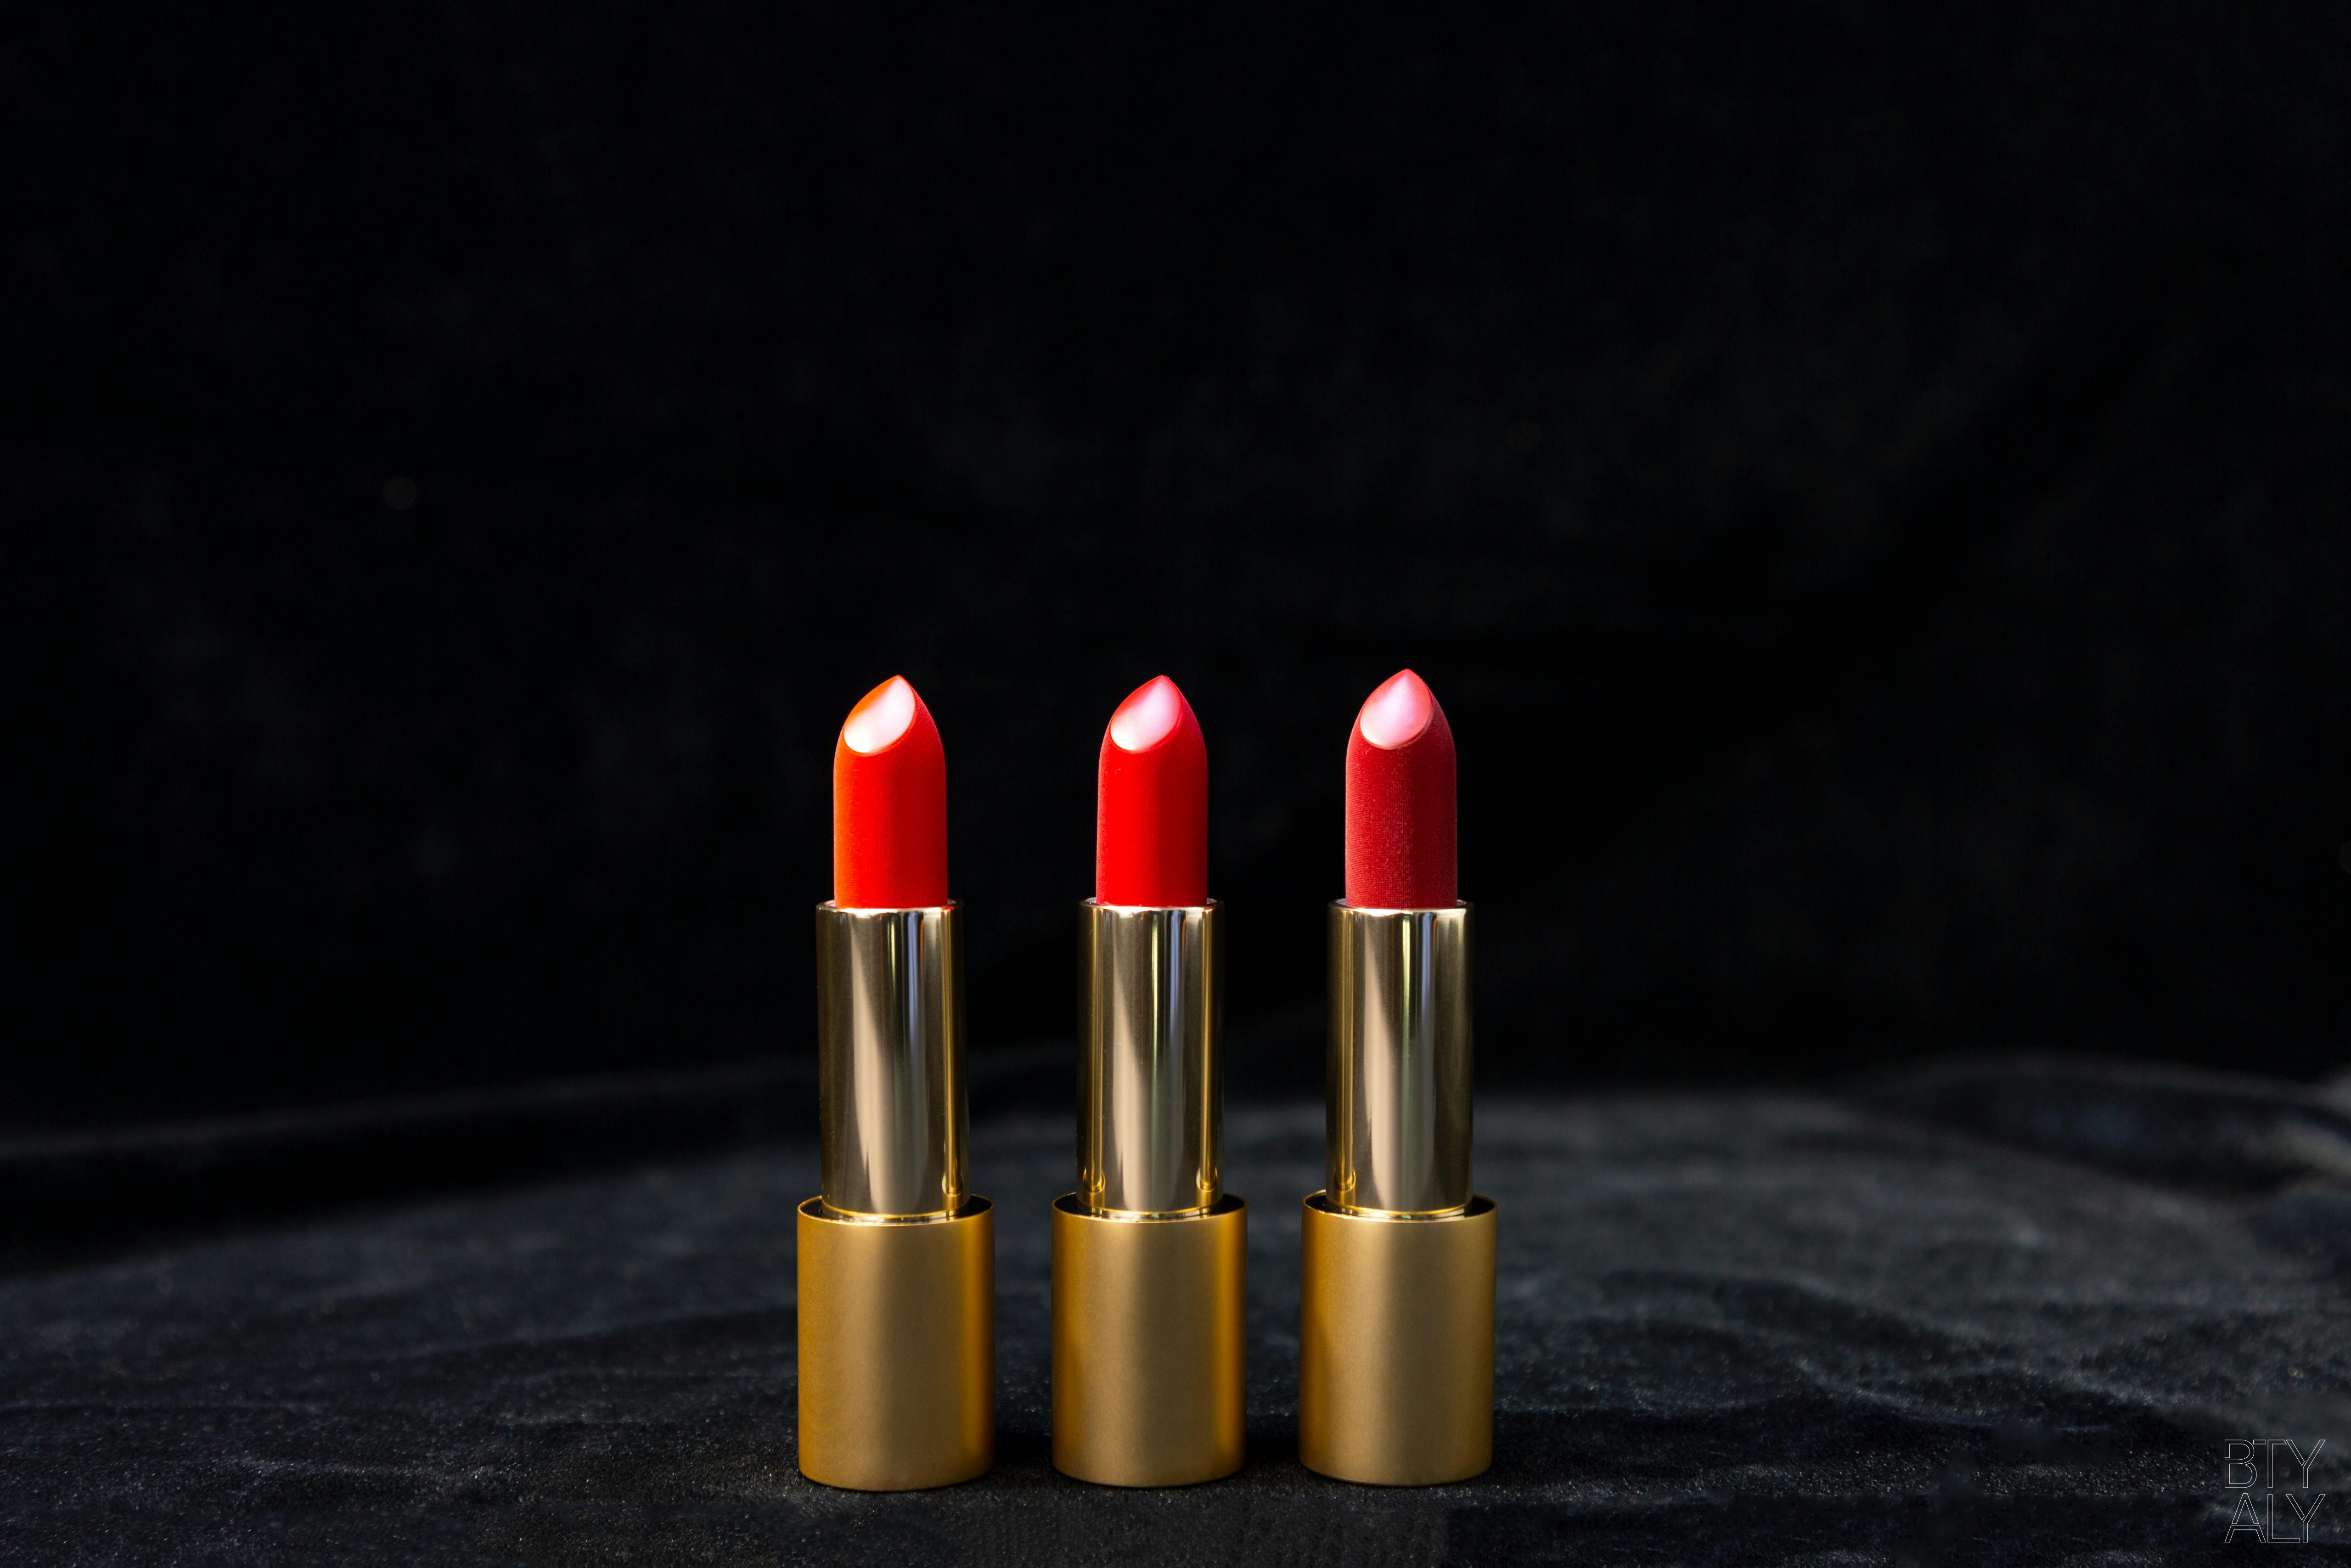 Lisa Eldridge Velvet Jazz True Velvet Lipstick Colour Dupes